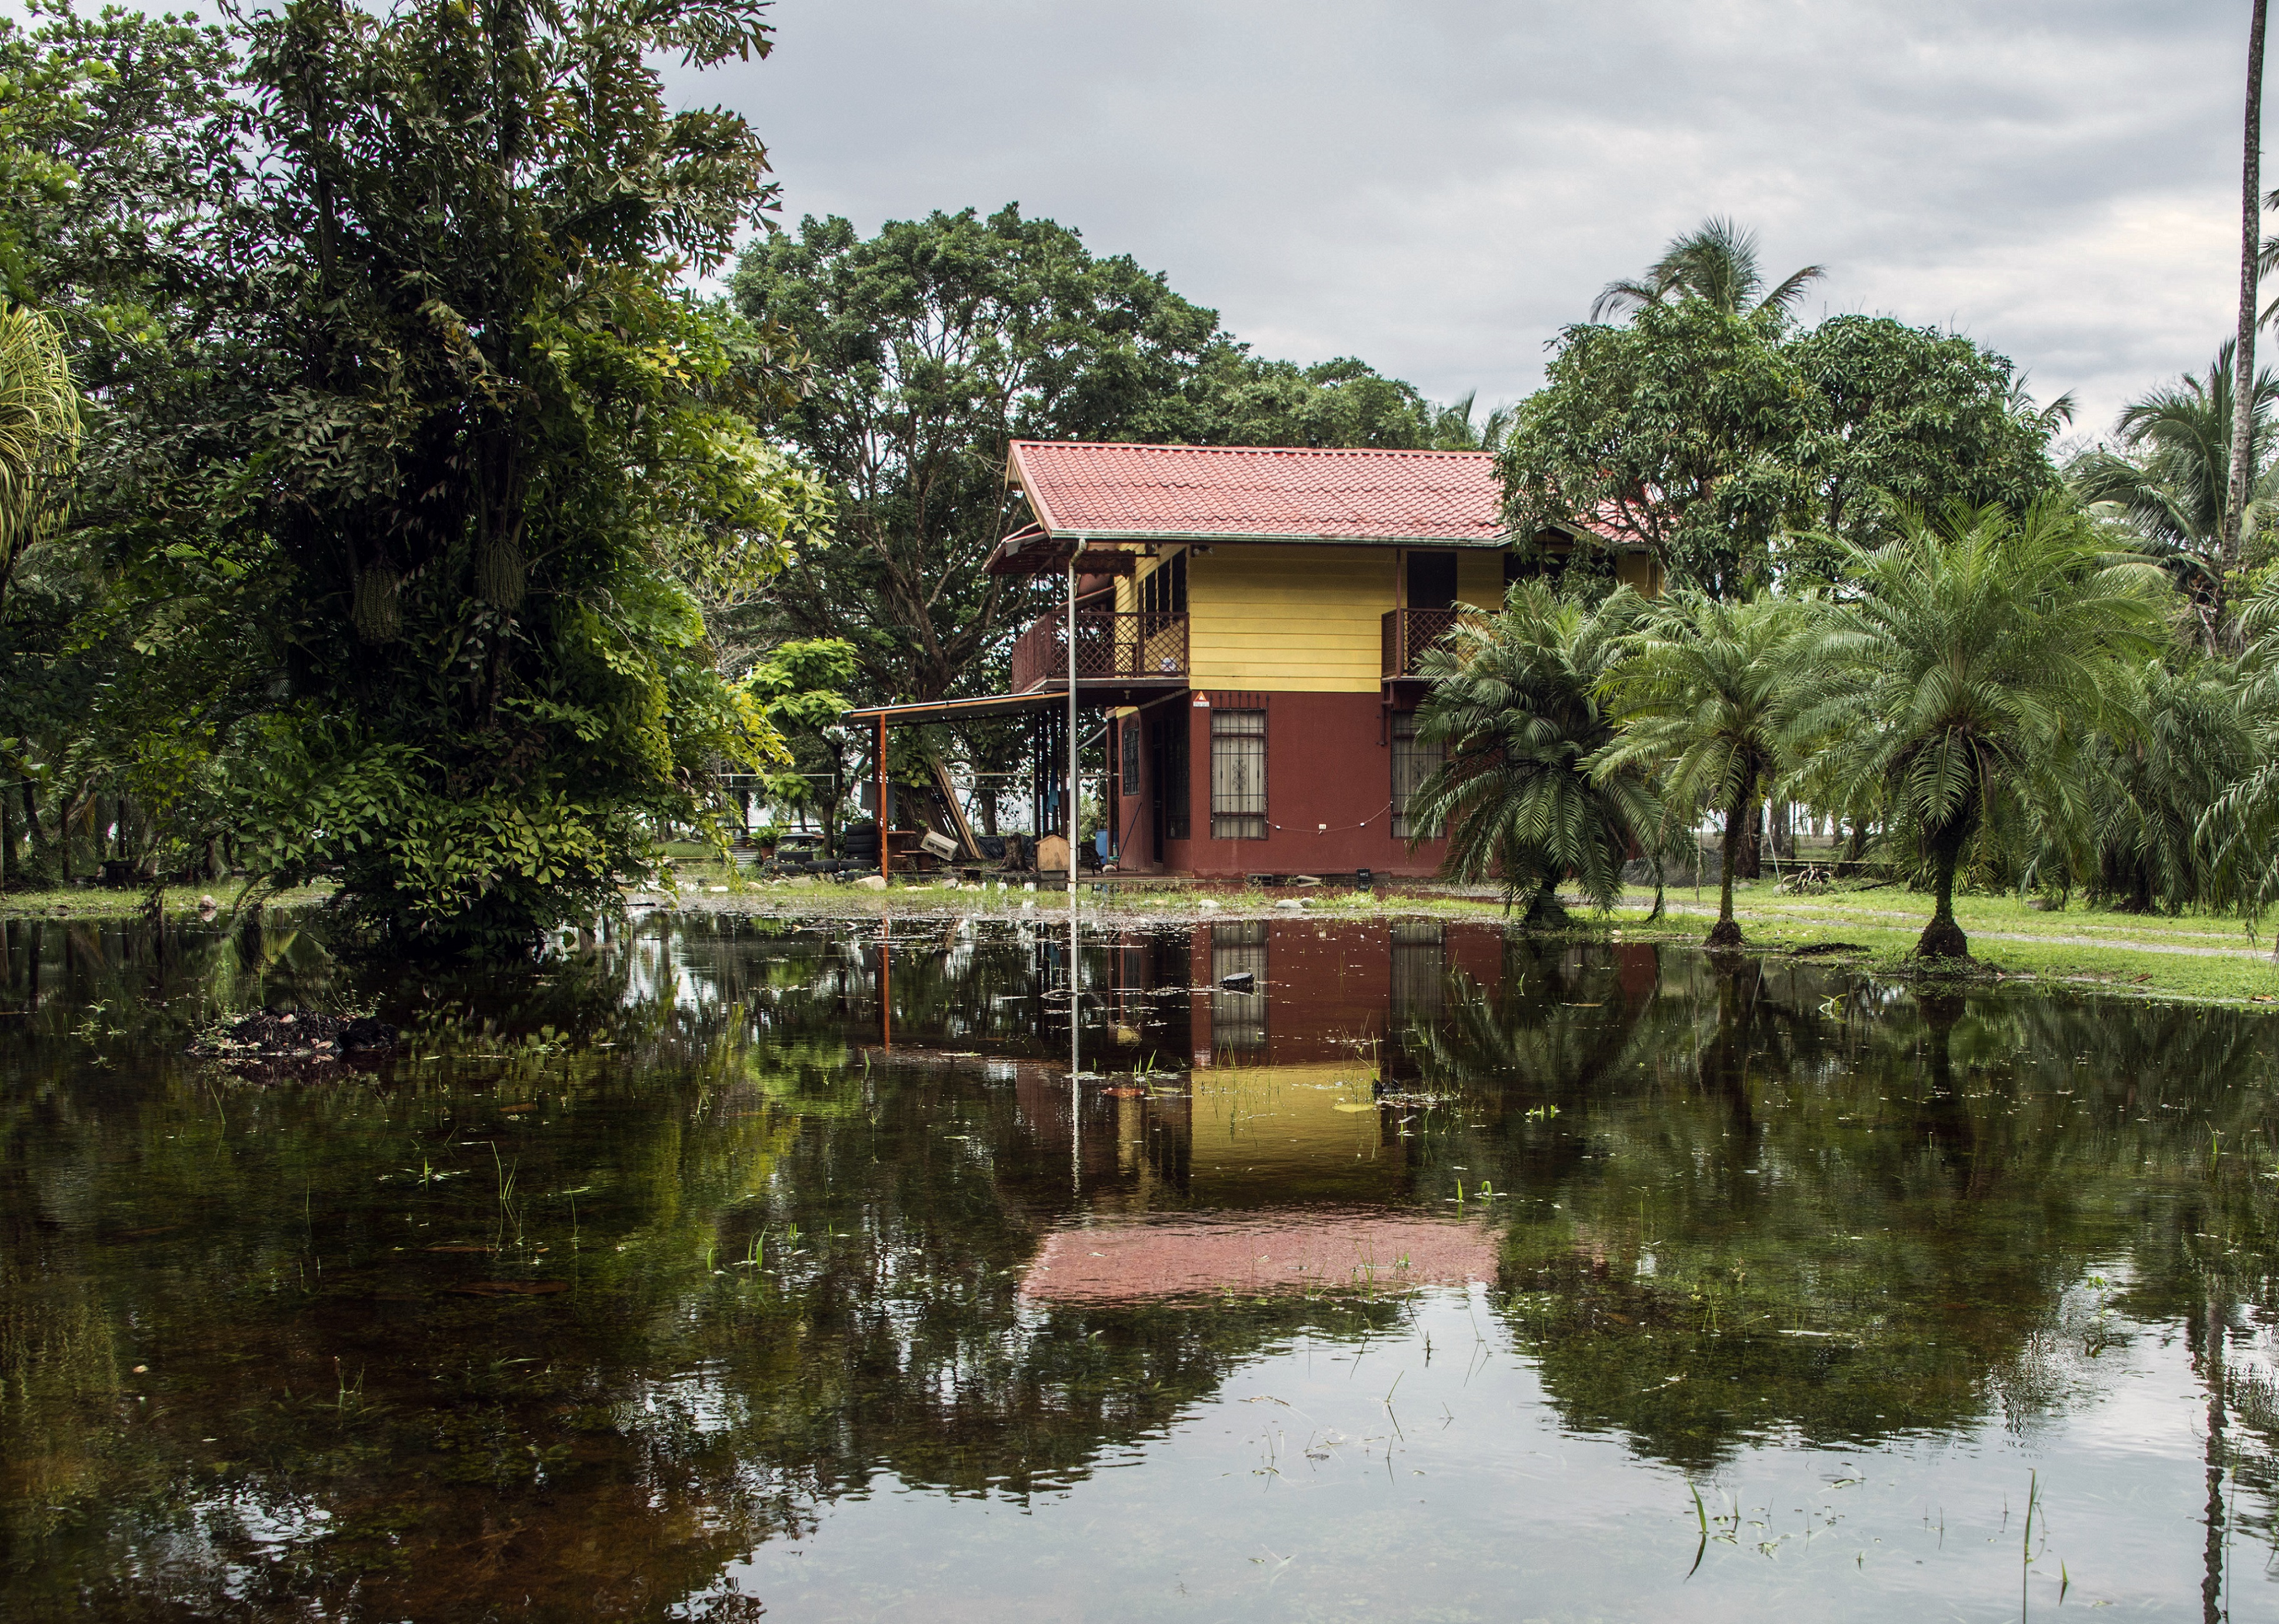 En Costa Rica, las lluvias provocaron inundaciones y aislaron algunas viviendas